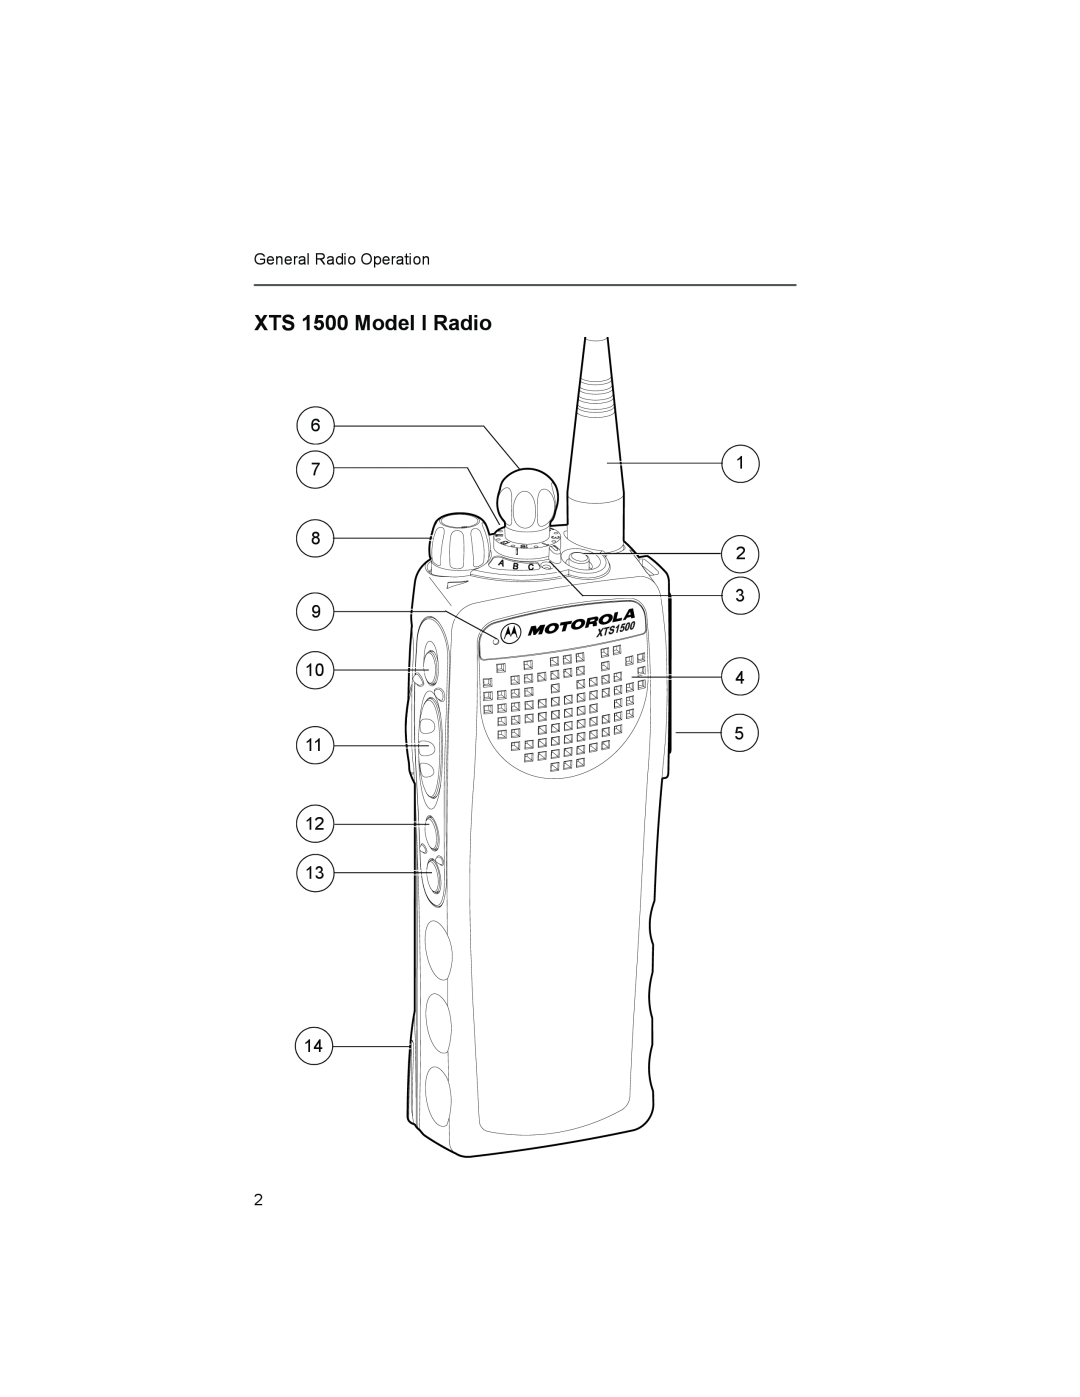 Motorola XTSTM 1500 manual XTS 1500 Model I Radio, General Radio Operation 